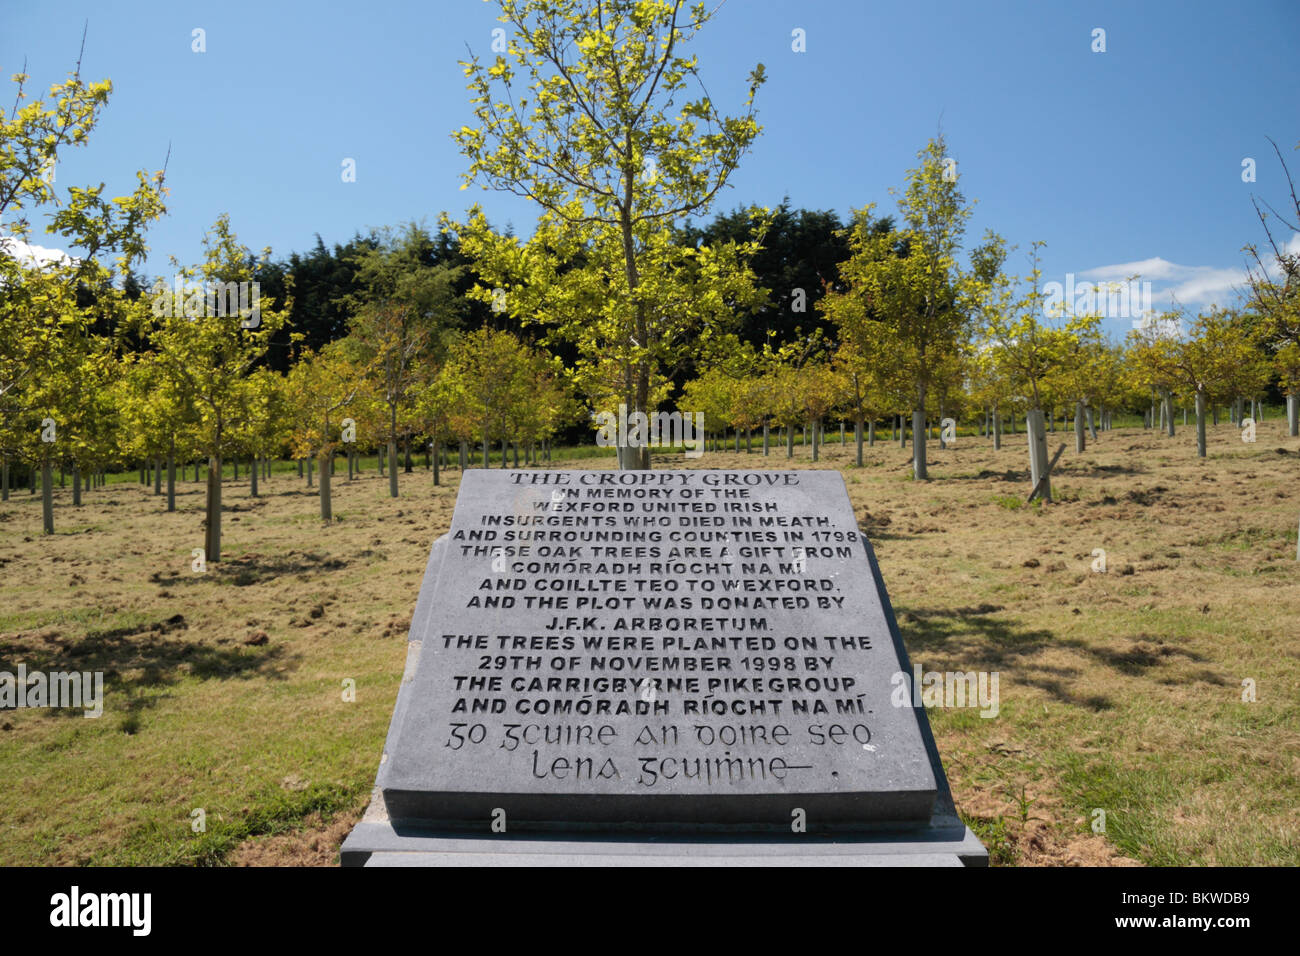 Ein Gedenkstein, umgeben von Eichen, Mark The Croppy Grove, John F. Kennedy Arboretum, Co. Wexford, Irland. Stockfoto